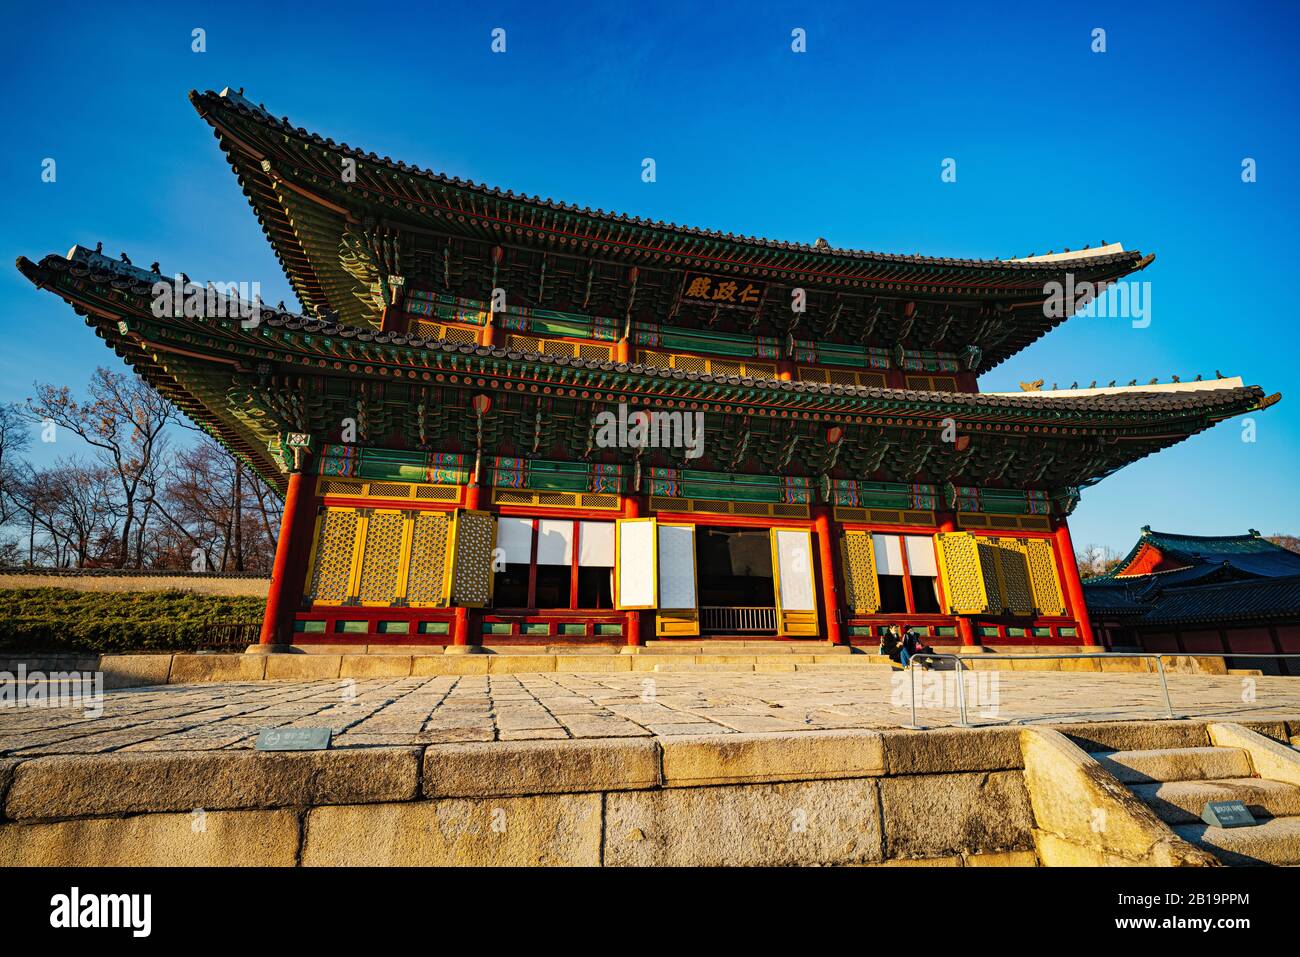 Seoul, Corea del Sud - 23 FEBBRAIO 2020: Di solito un posto affollato fine settimana, due visitatori godono di un palazzo Changdeokgung vuoto durante la pandemia di COVID19. Foto Stock